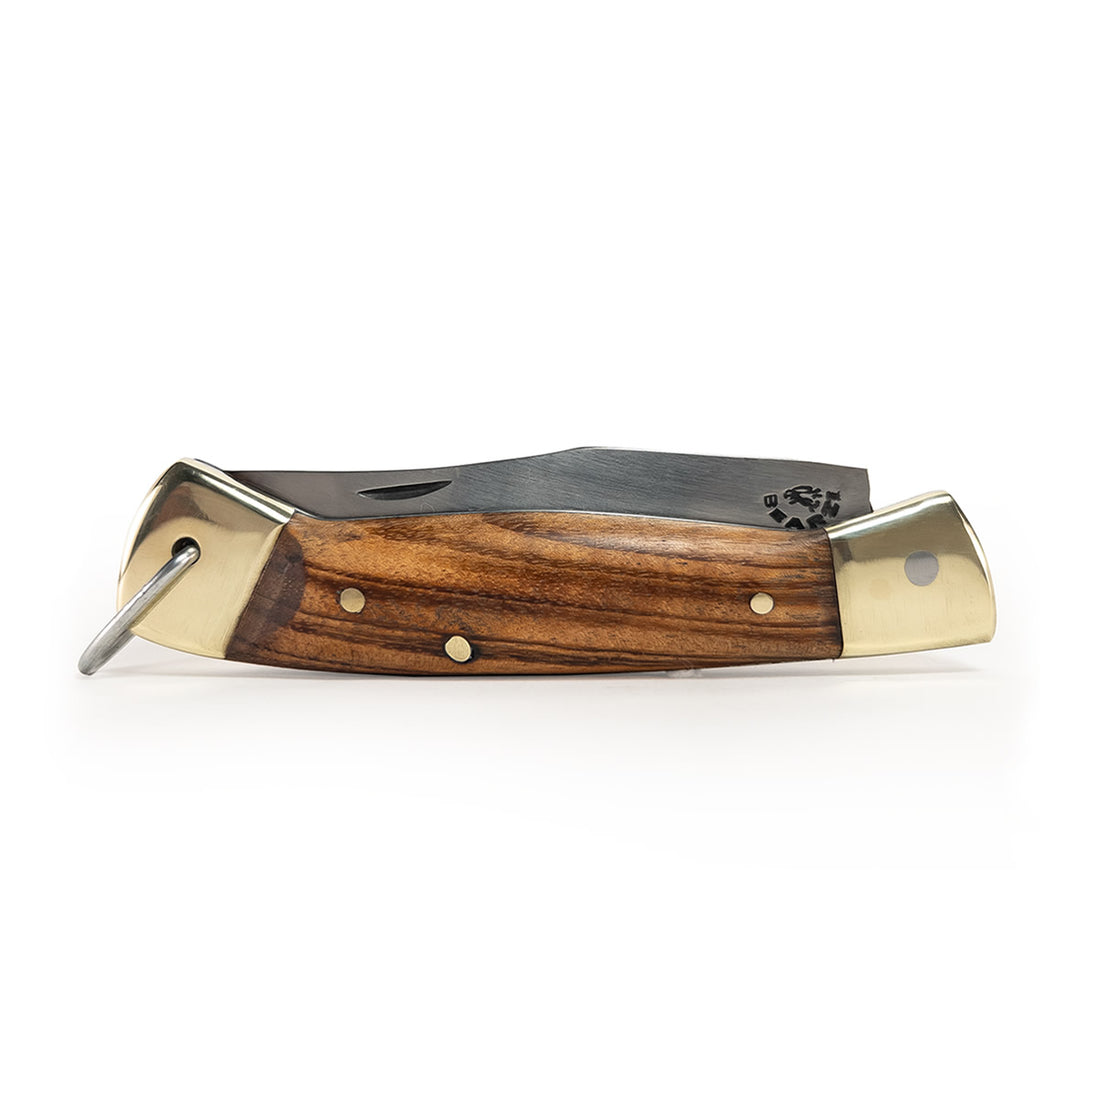 Furbem - Canivete HR clássico. Cabo em madeira e lâmina forjada em aço inox